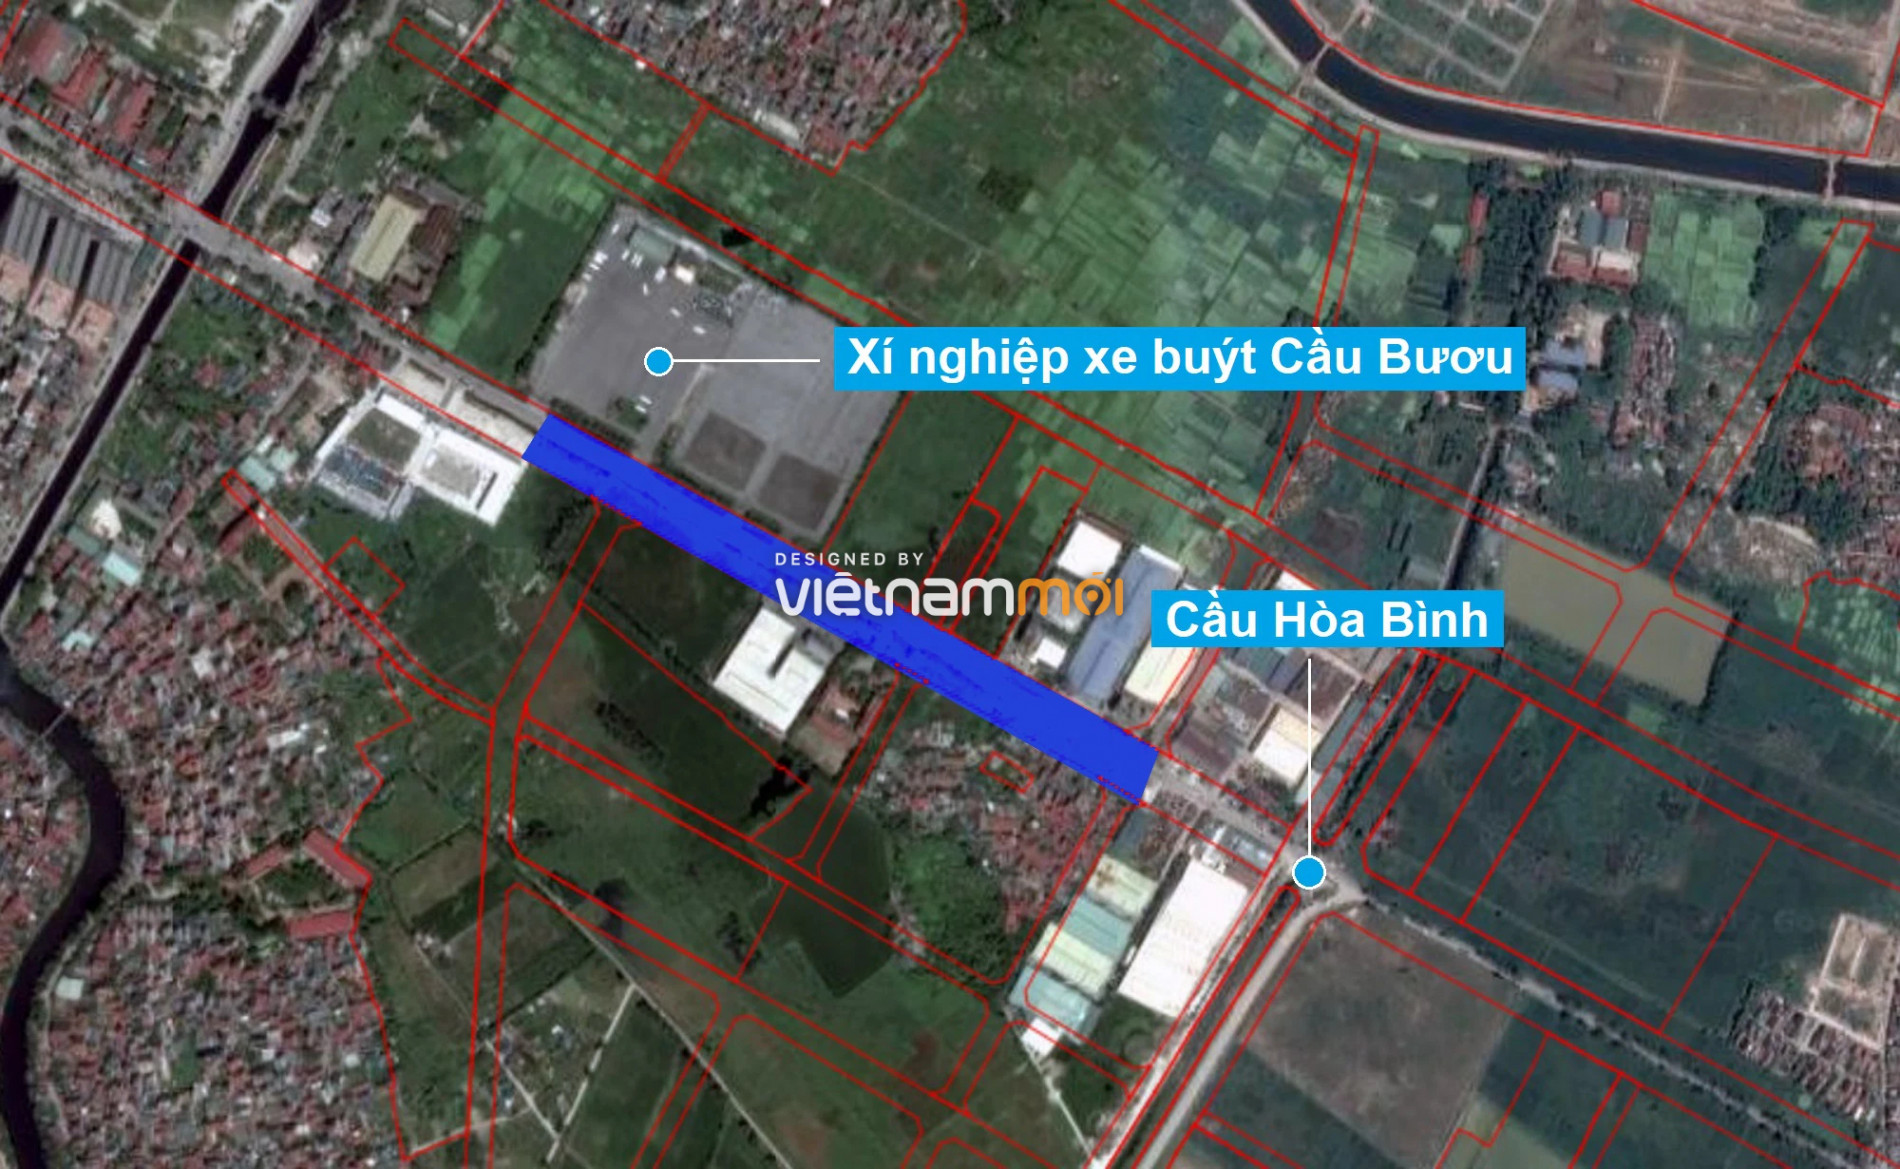 Những khu đất sắp thu hồi để mở đường ở xã Thanh Liệt, Thanh Trì, Hà Nội (phần 6) - Ảnh 14.